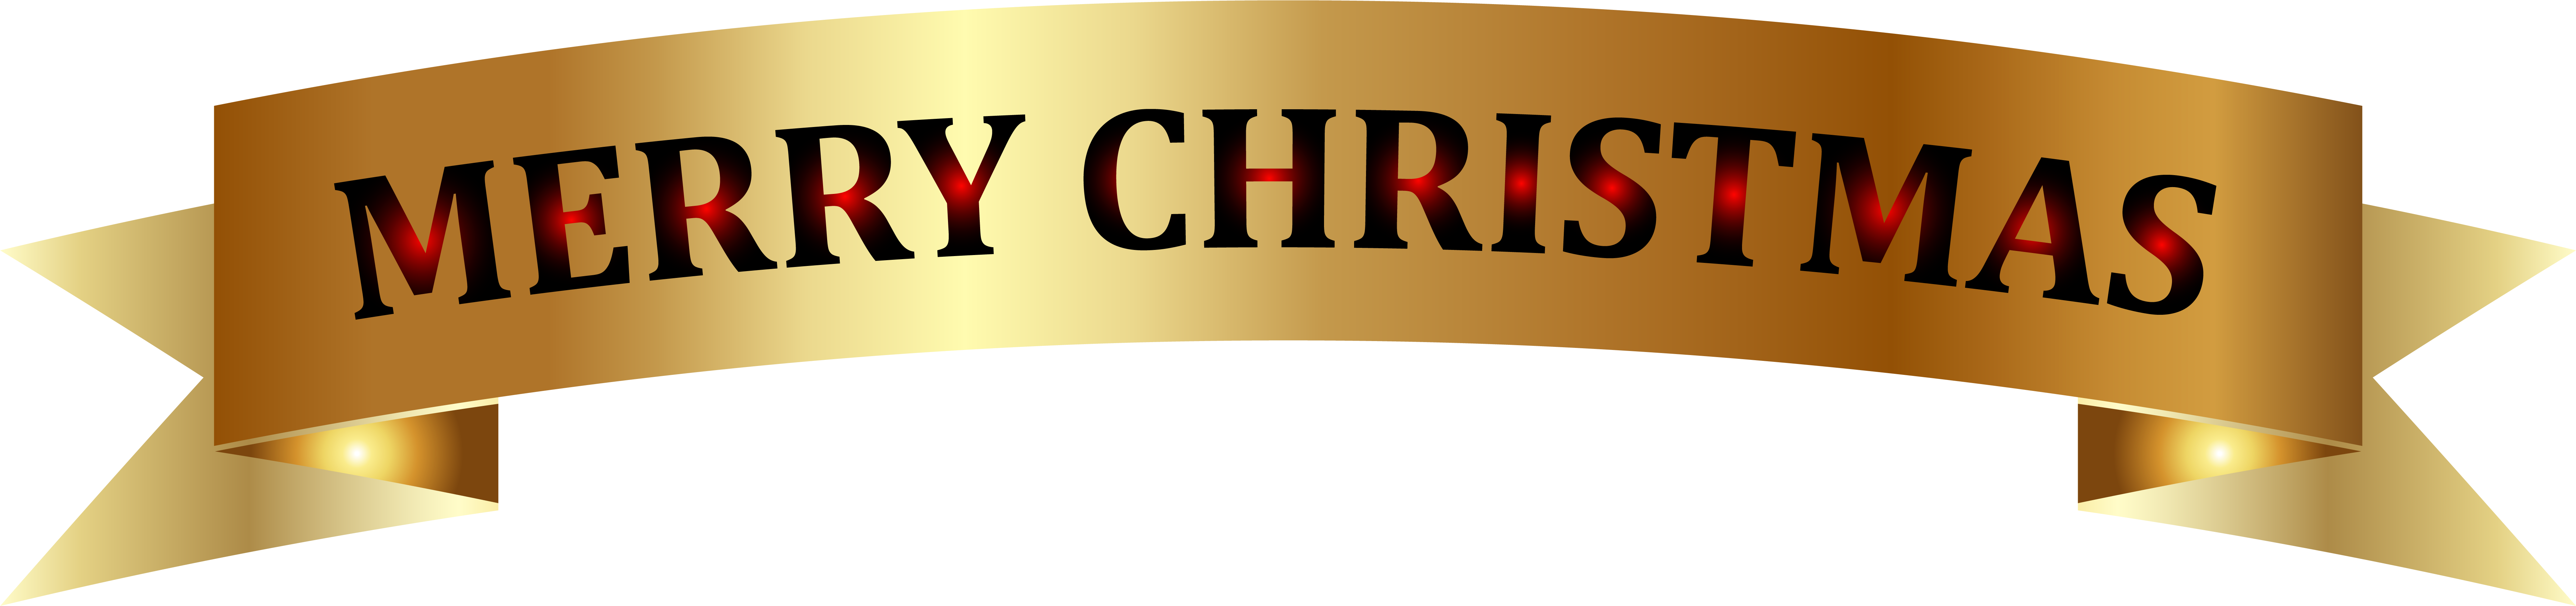 Golden Merry Christmas Banner Png Clip-art Image - Golden Merry Christmas Banner Png Clip-art Image (7543x1775)